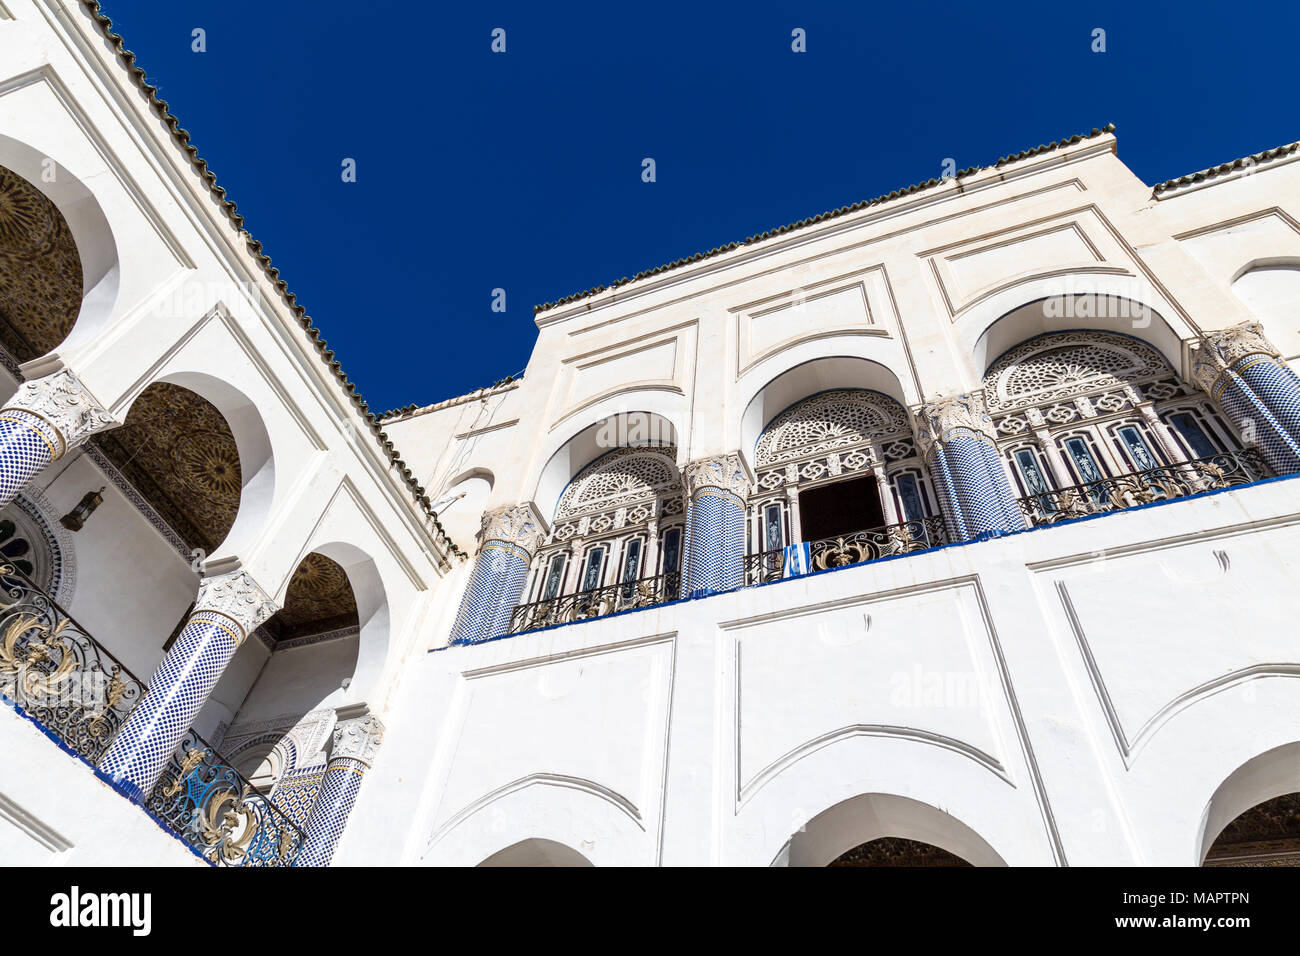 Detalle de la arquitectura oriental de un palacio marroquí, con arcos, columnas y decoraciones de mosaicos, el Palacio de El Mokri, en Fes, Marruecos Foto de stock